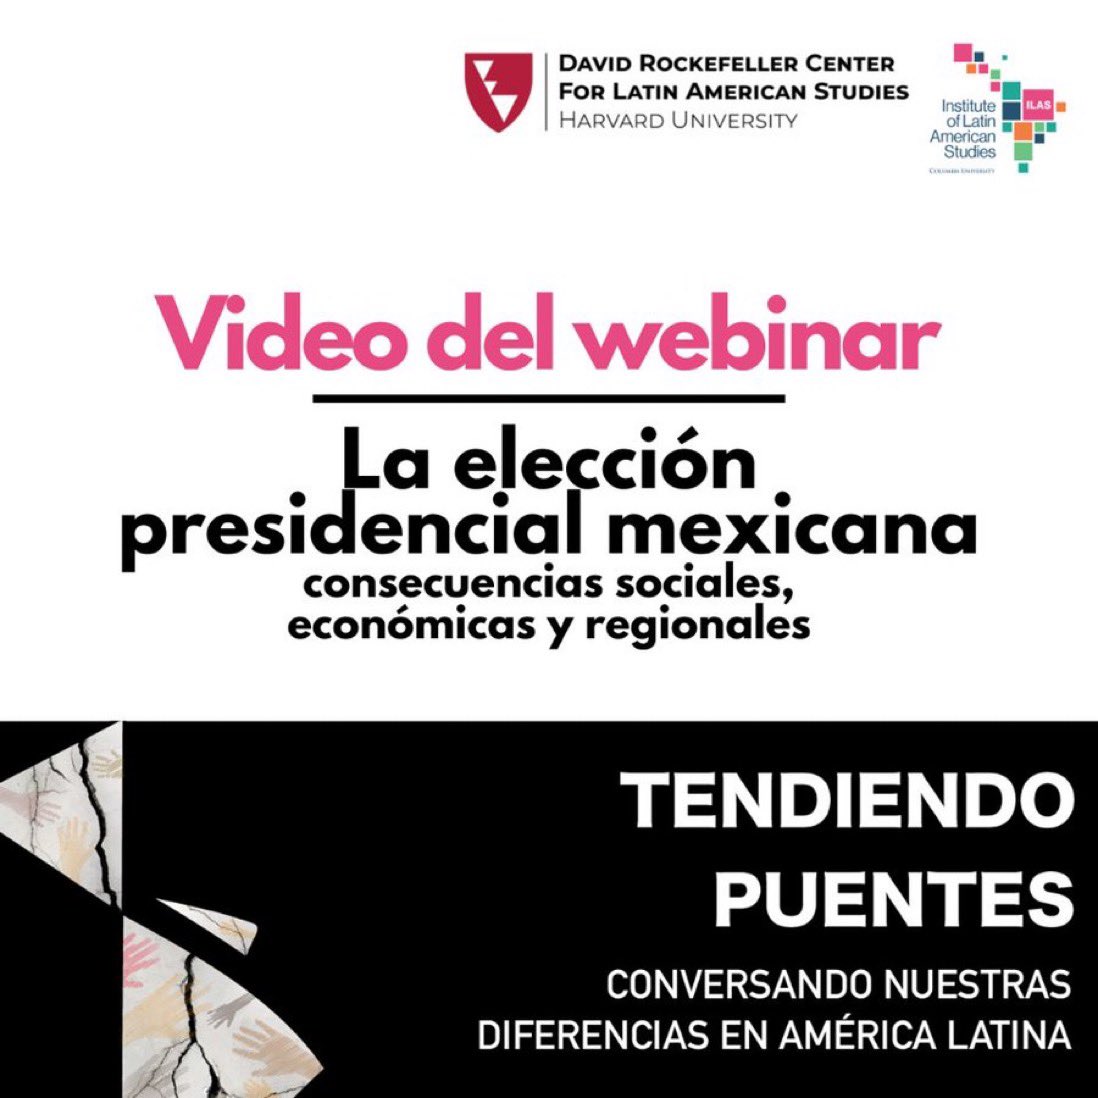 ¿Te perdiste nuestro evento con @HarvardDRCLAS sobre la elección presidencial mexicana? ¡Acabamos de subir una grabación del webinar a nuestro canal de YouTube! Panelistas: @rturrent y @ildefonsogv Encuéntrala aquí: youtu.be/XzsFMv8PiHs?fe…